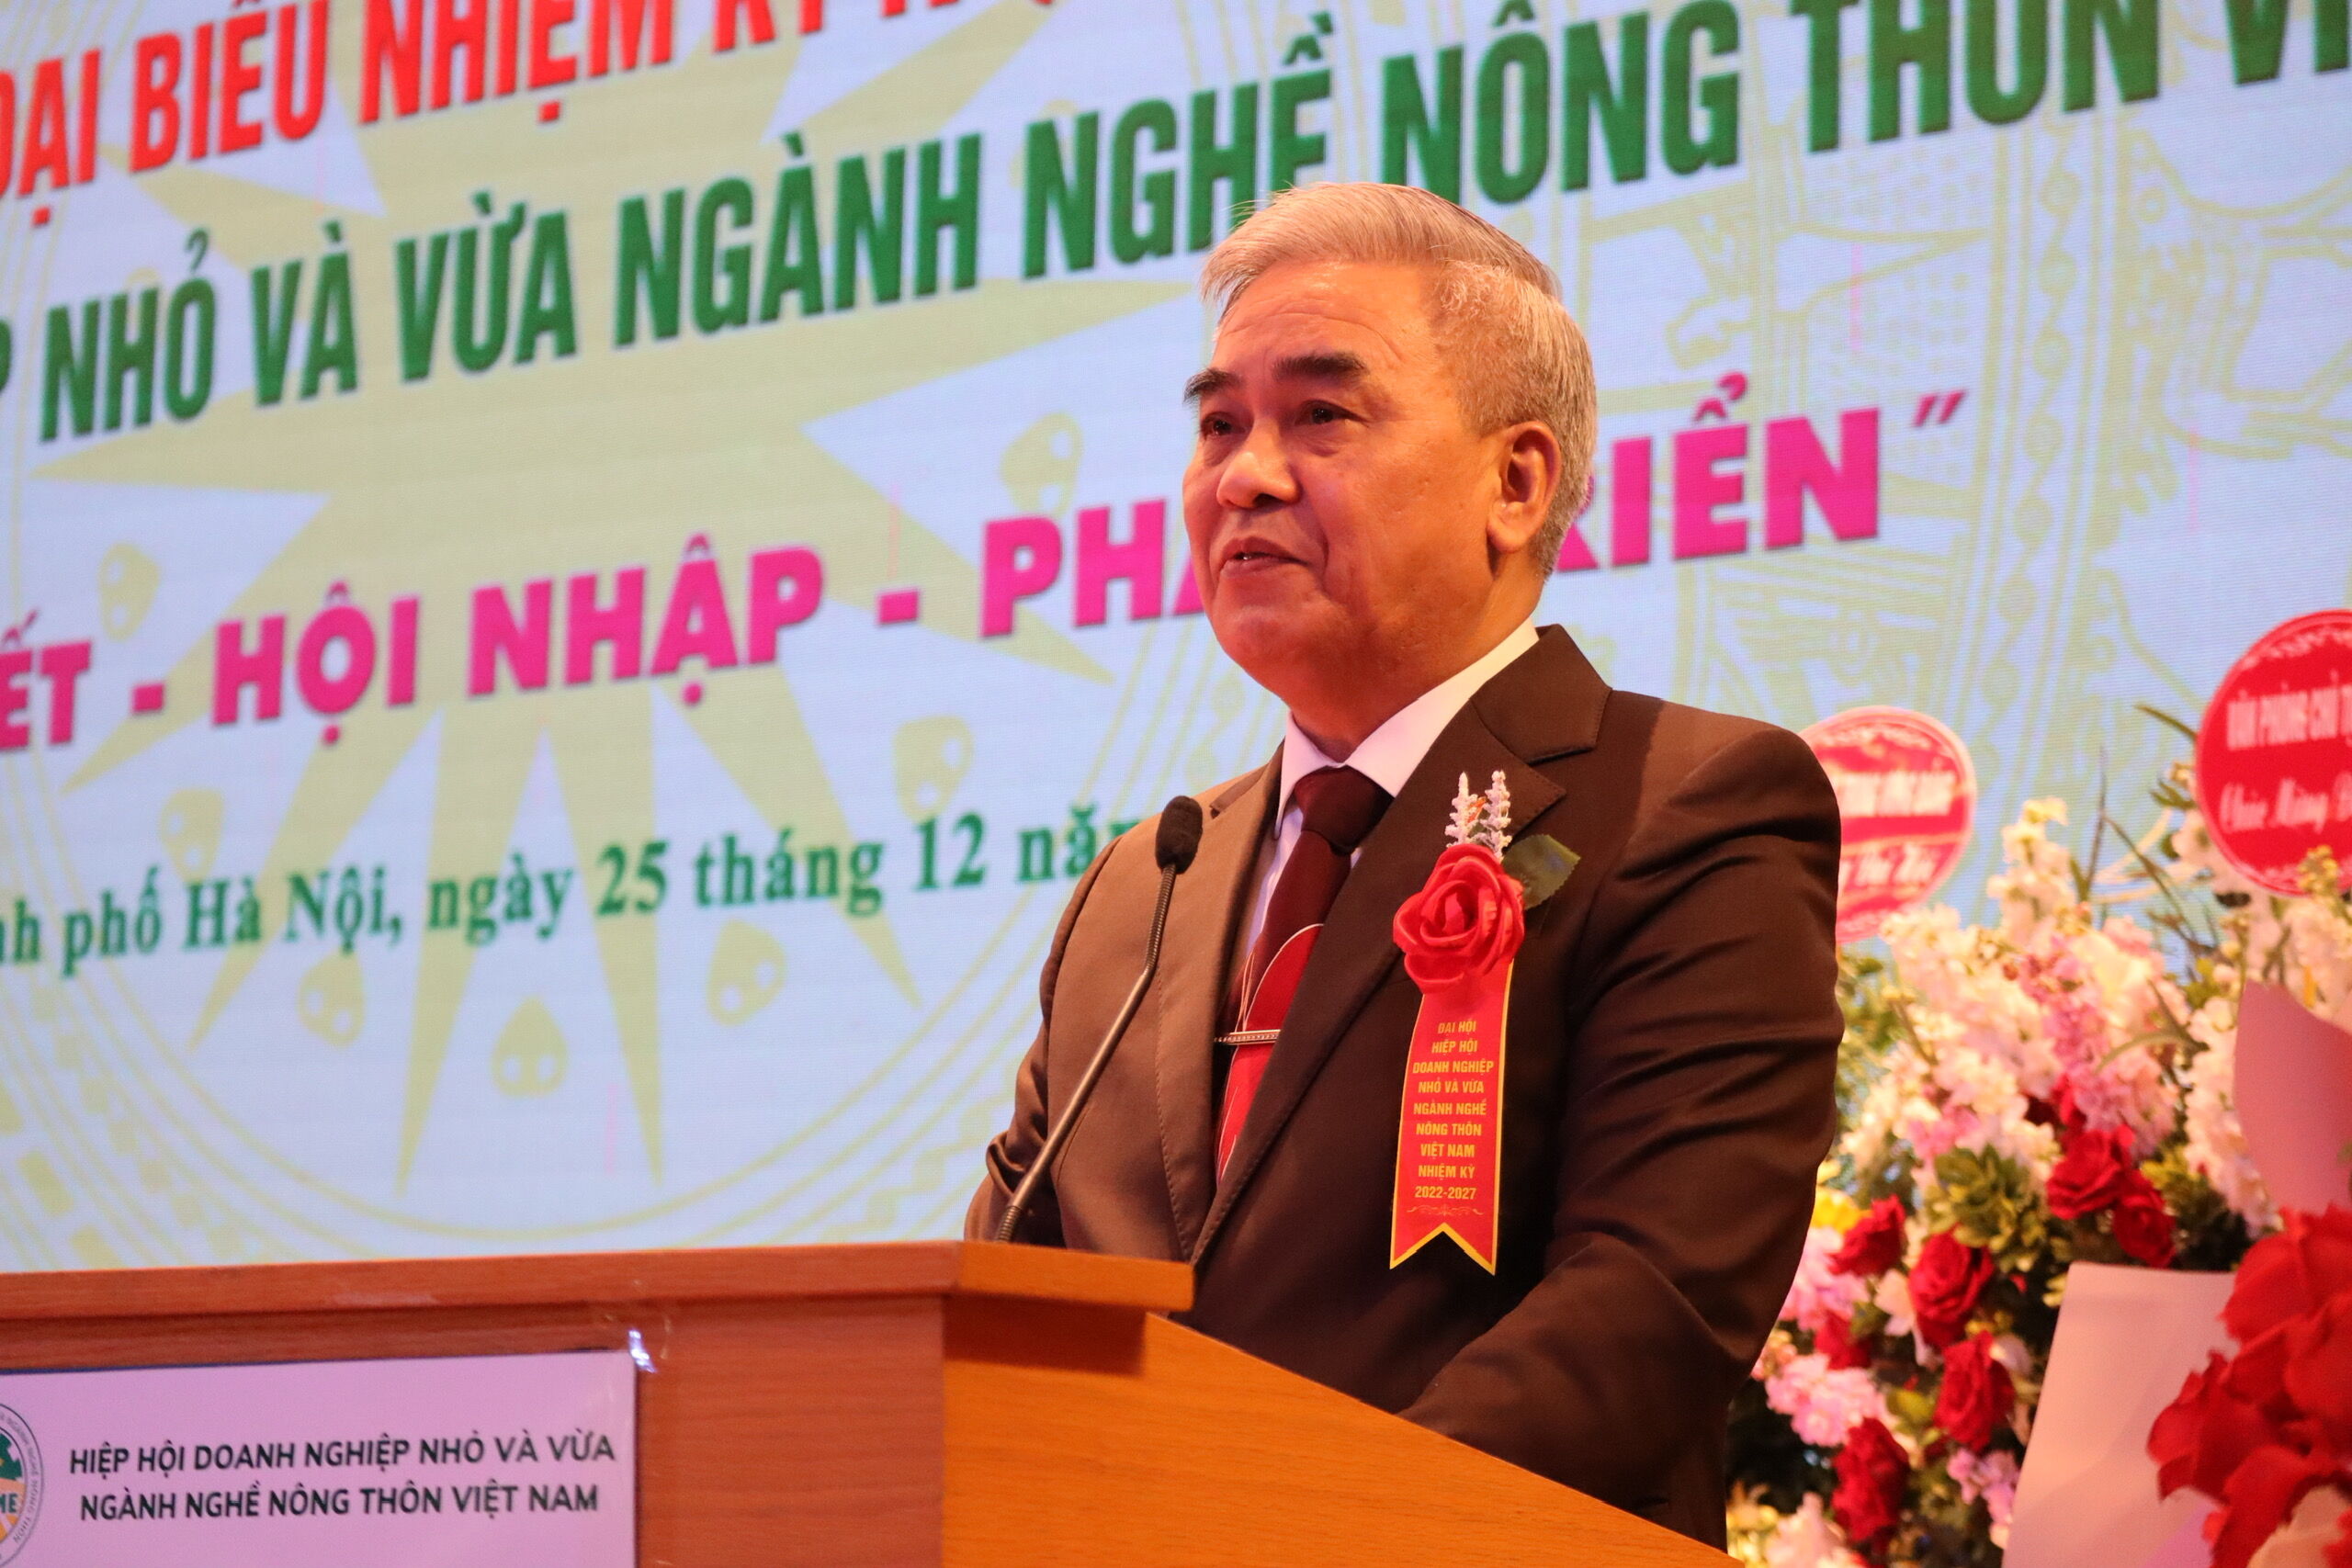 Đồng chí Nguyễn Ngọc Quang - Chủ tịch Hiệp hội Doanh nghiệp nhỏ và vừa ngành nghề nông thôn Việt Nam.